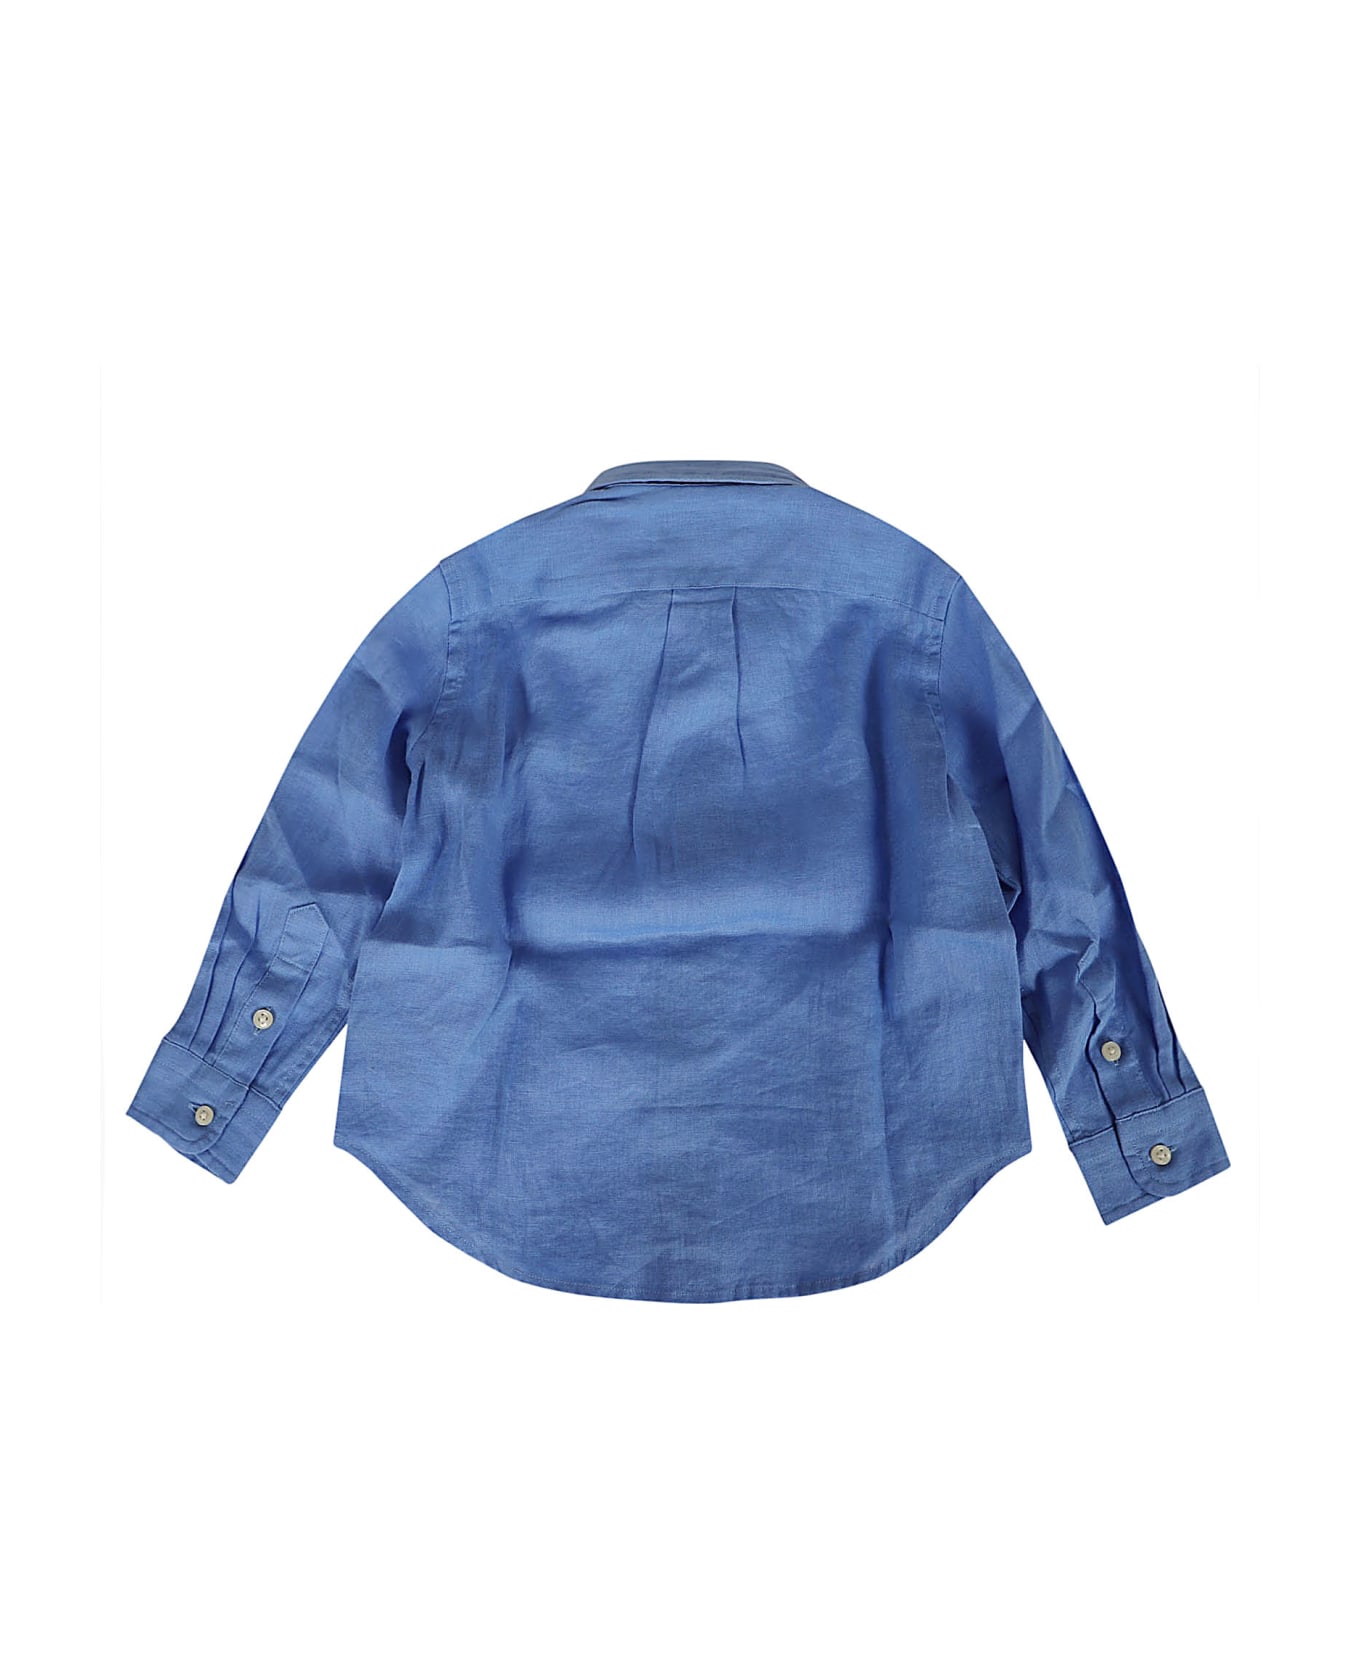 Ralph Lauren Clbdppc-shirts-sport Shirt - Harbor Island Blue